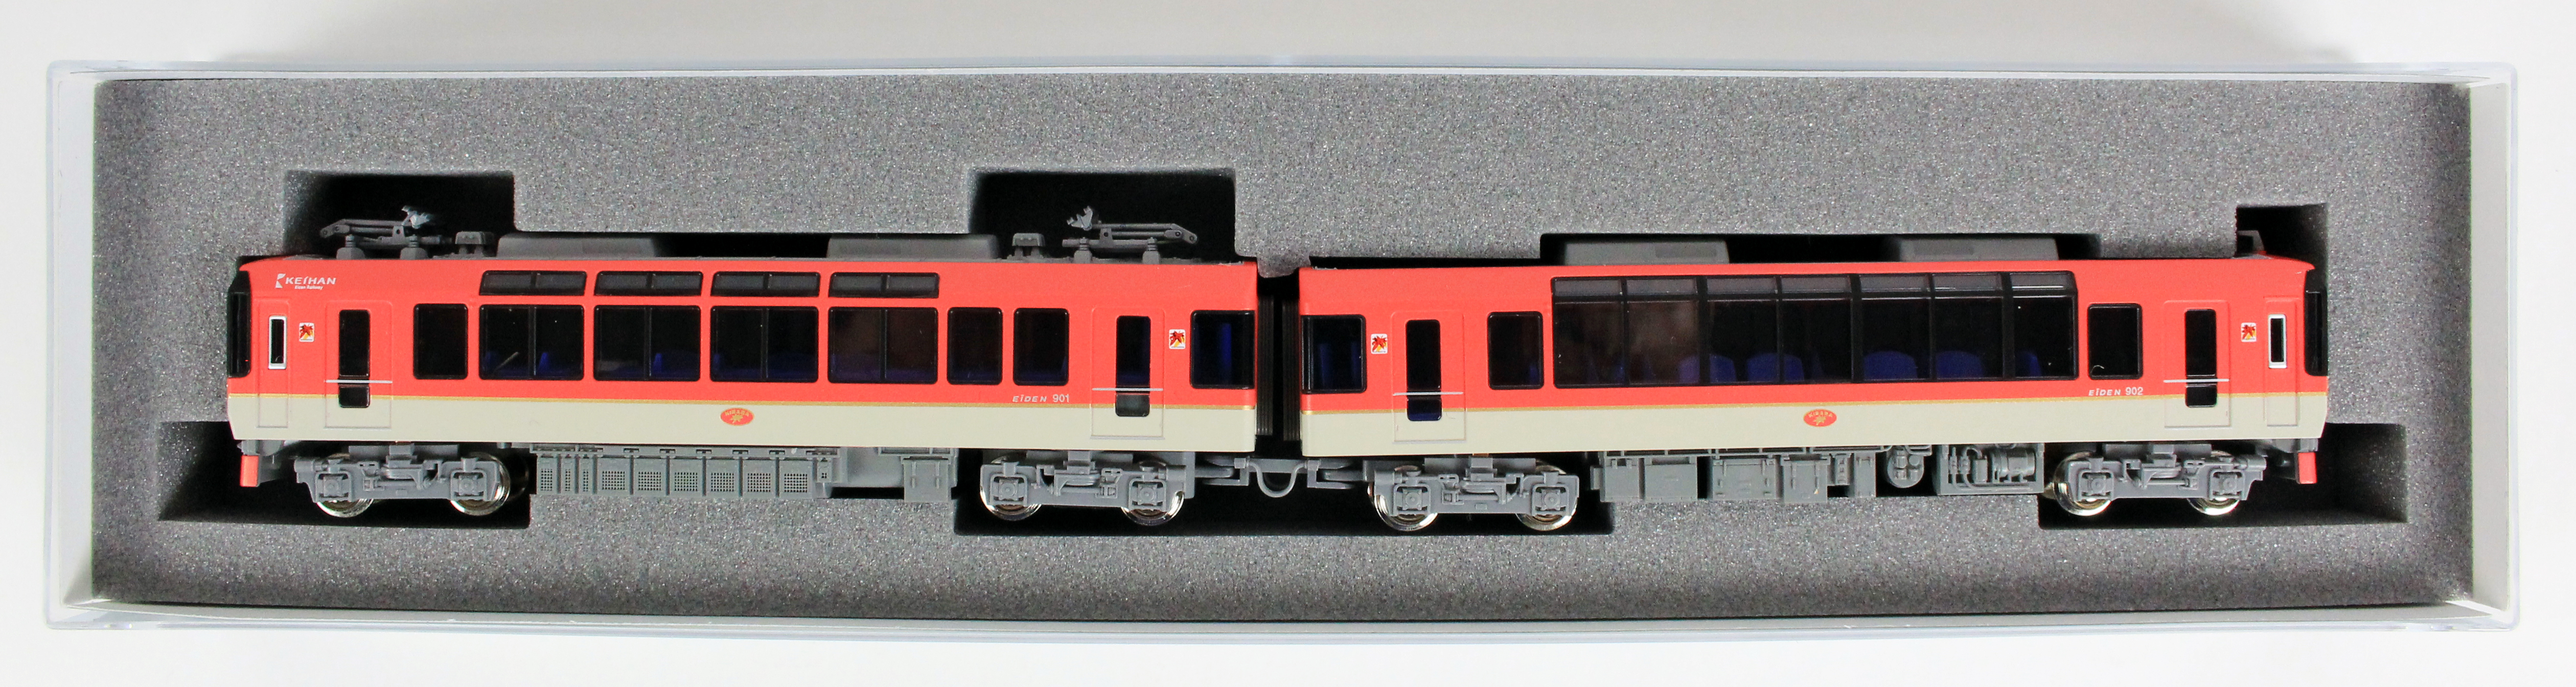 KATO 10-1471 叡山電鉄900系 きらら（メープルレッド） 鉄道模型 N